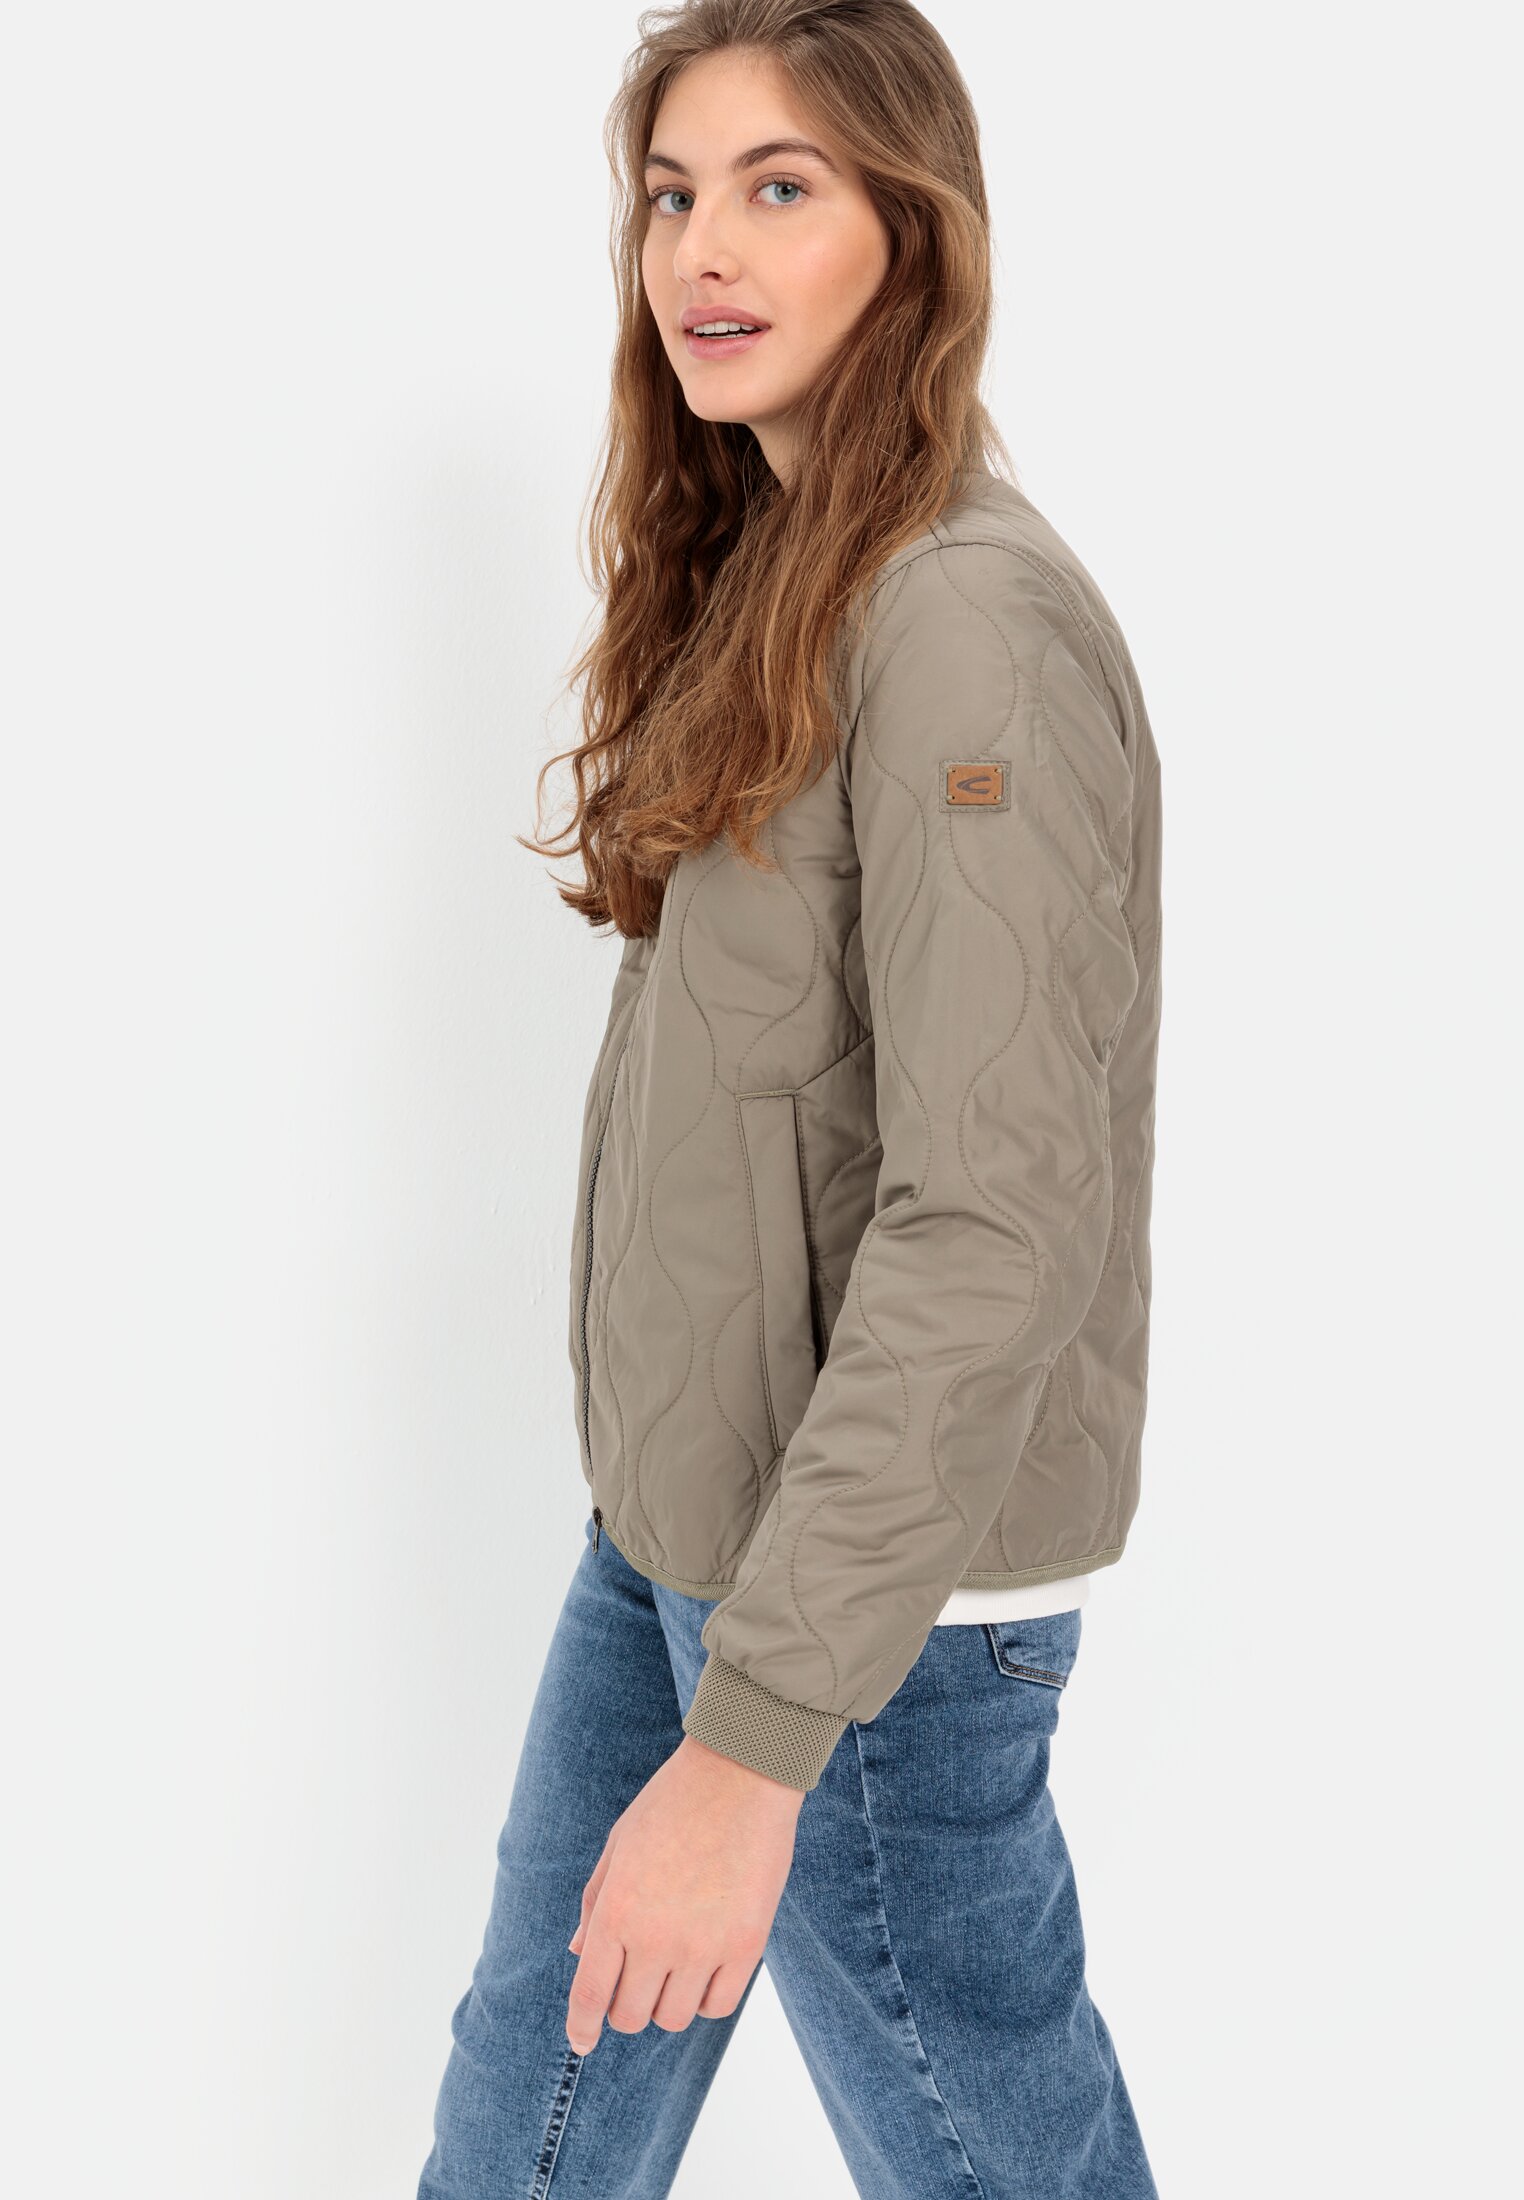 Leichte Jacken für Damen | Outdoor-Ausrüstung | camel active